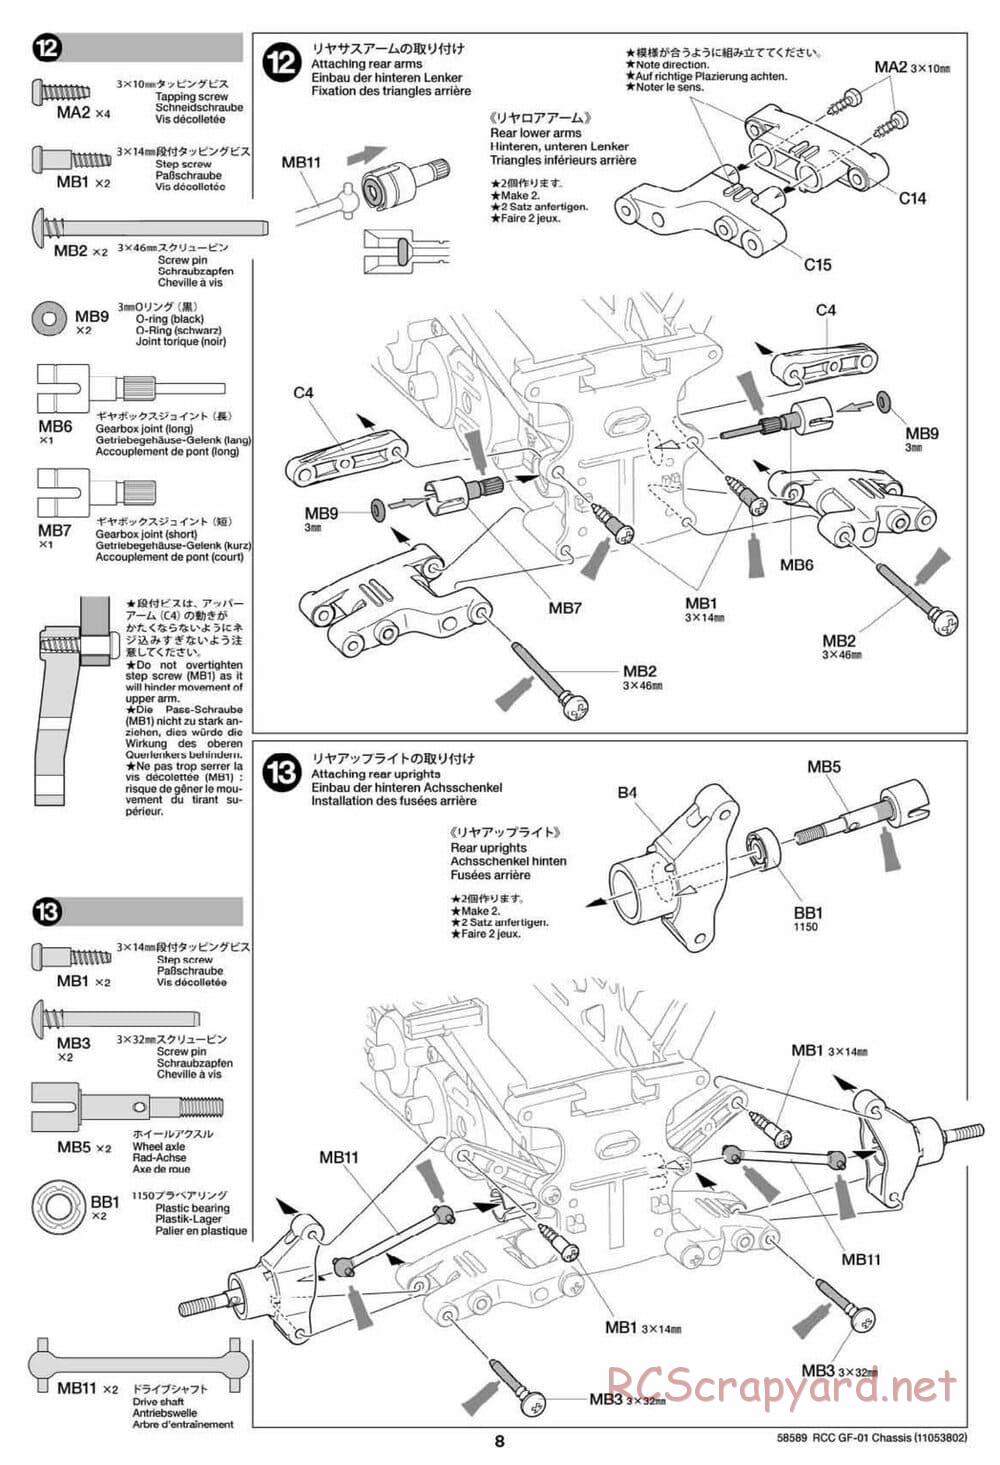 Tamiya - GF-01 Chassis - Manual - Page 8